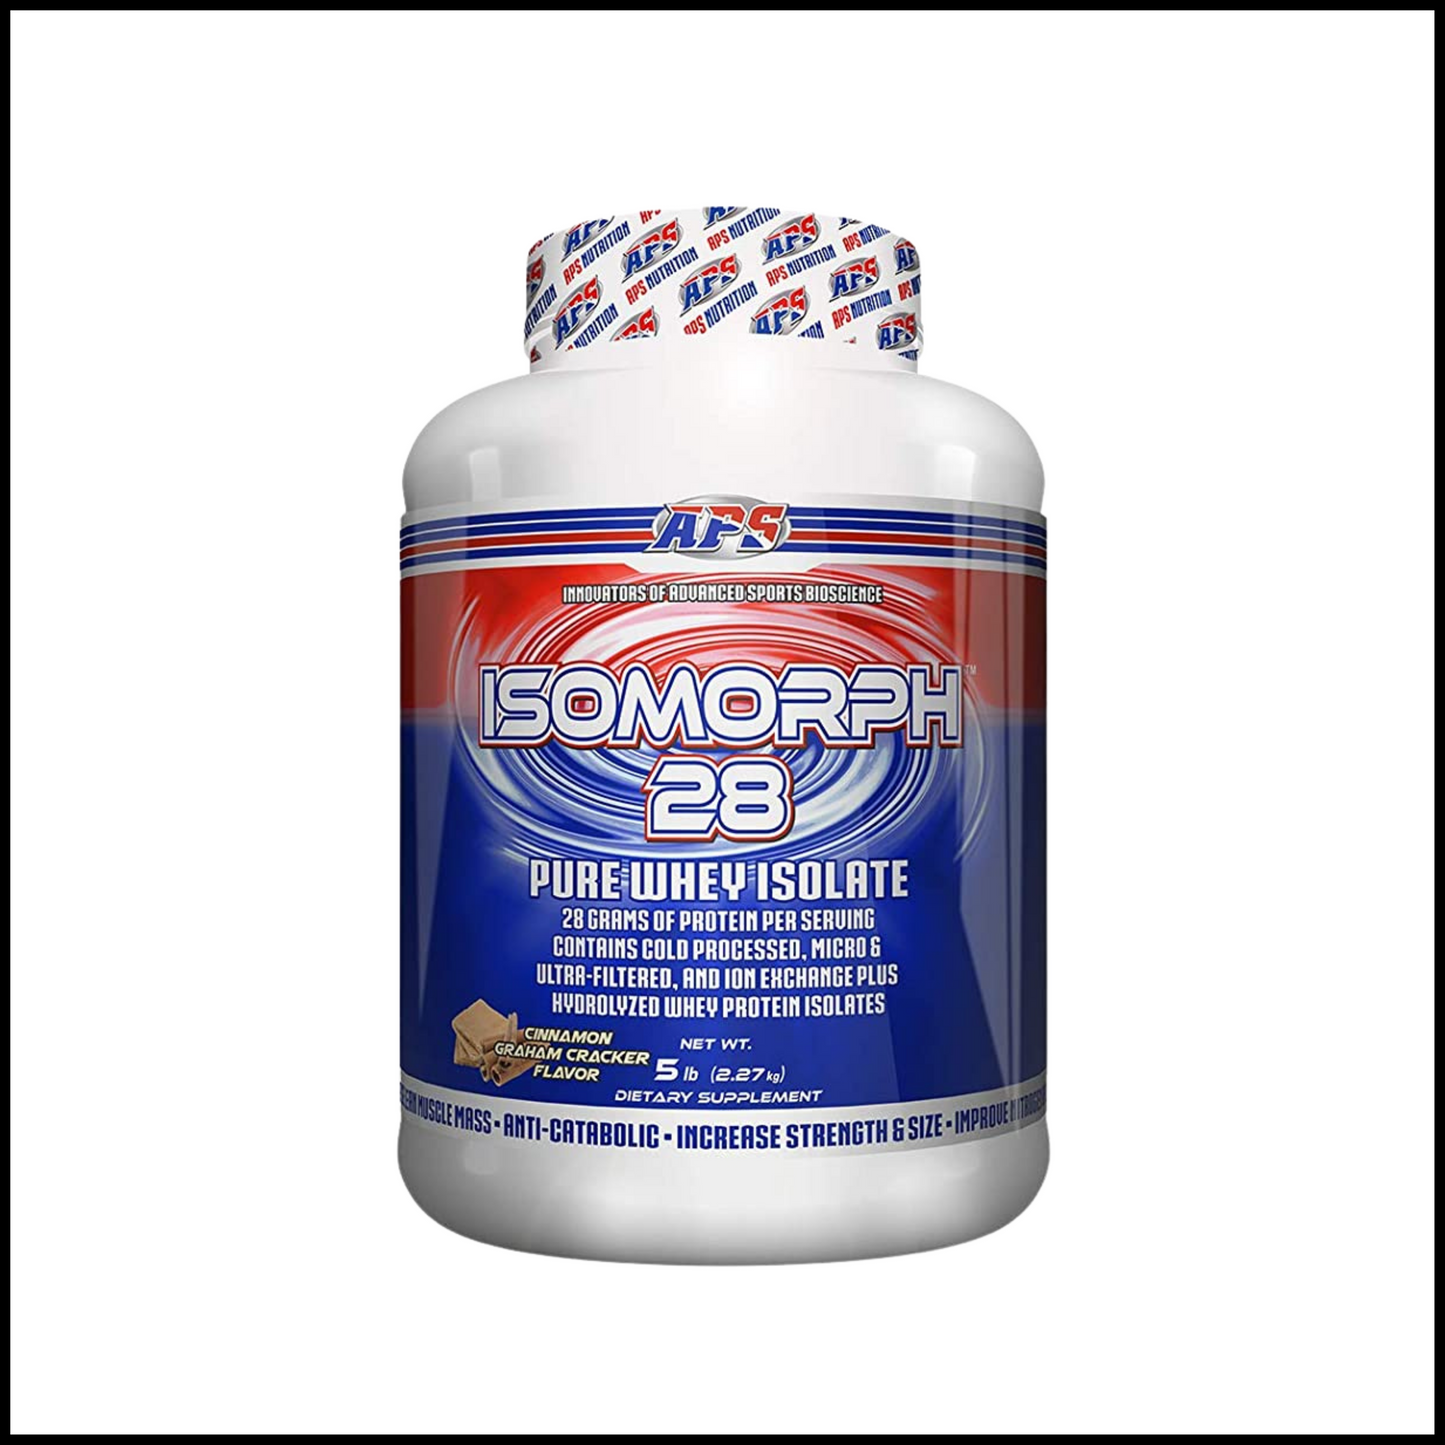 Isomorph Protein Powder Supplement 28g - Cinnamon Graham Cracker | 5 Pound